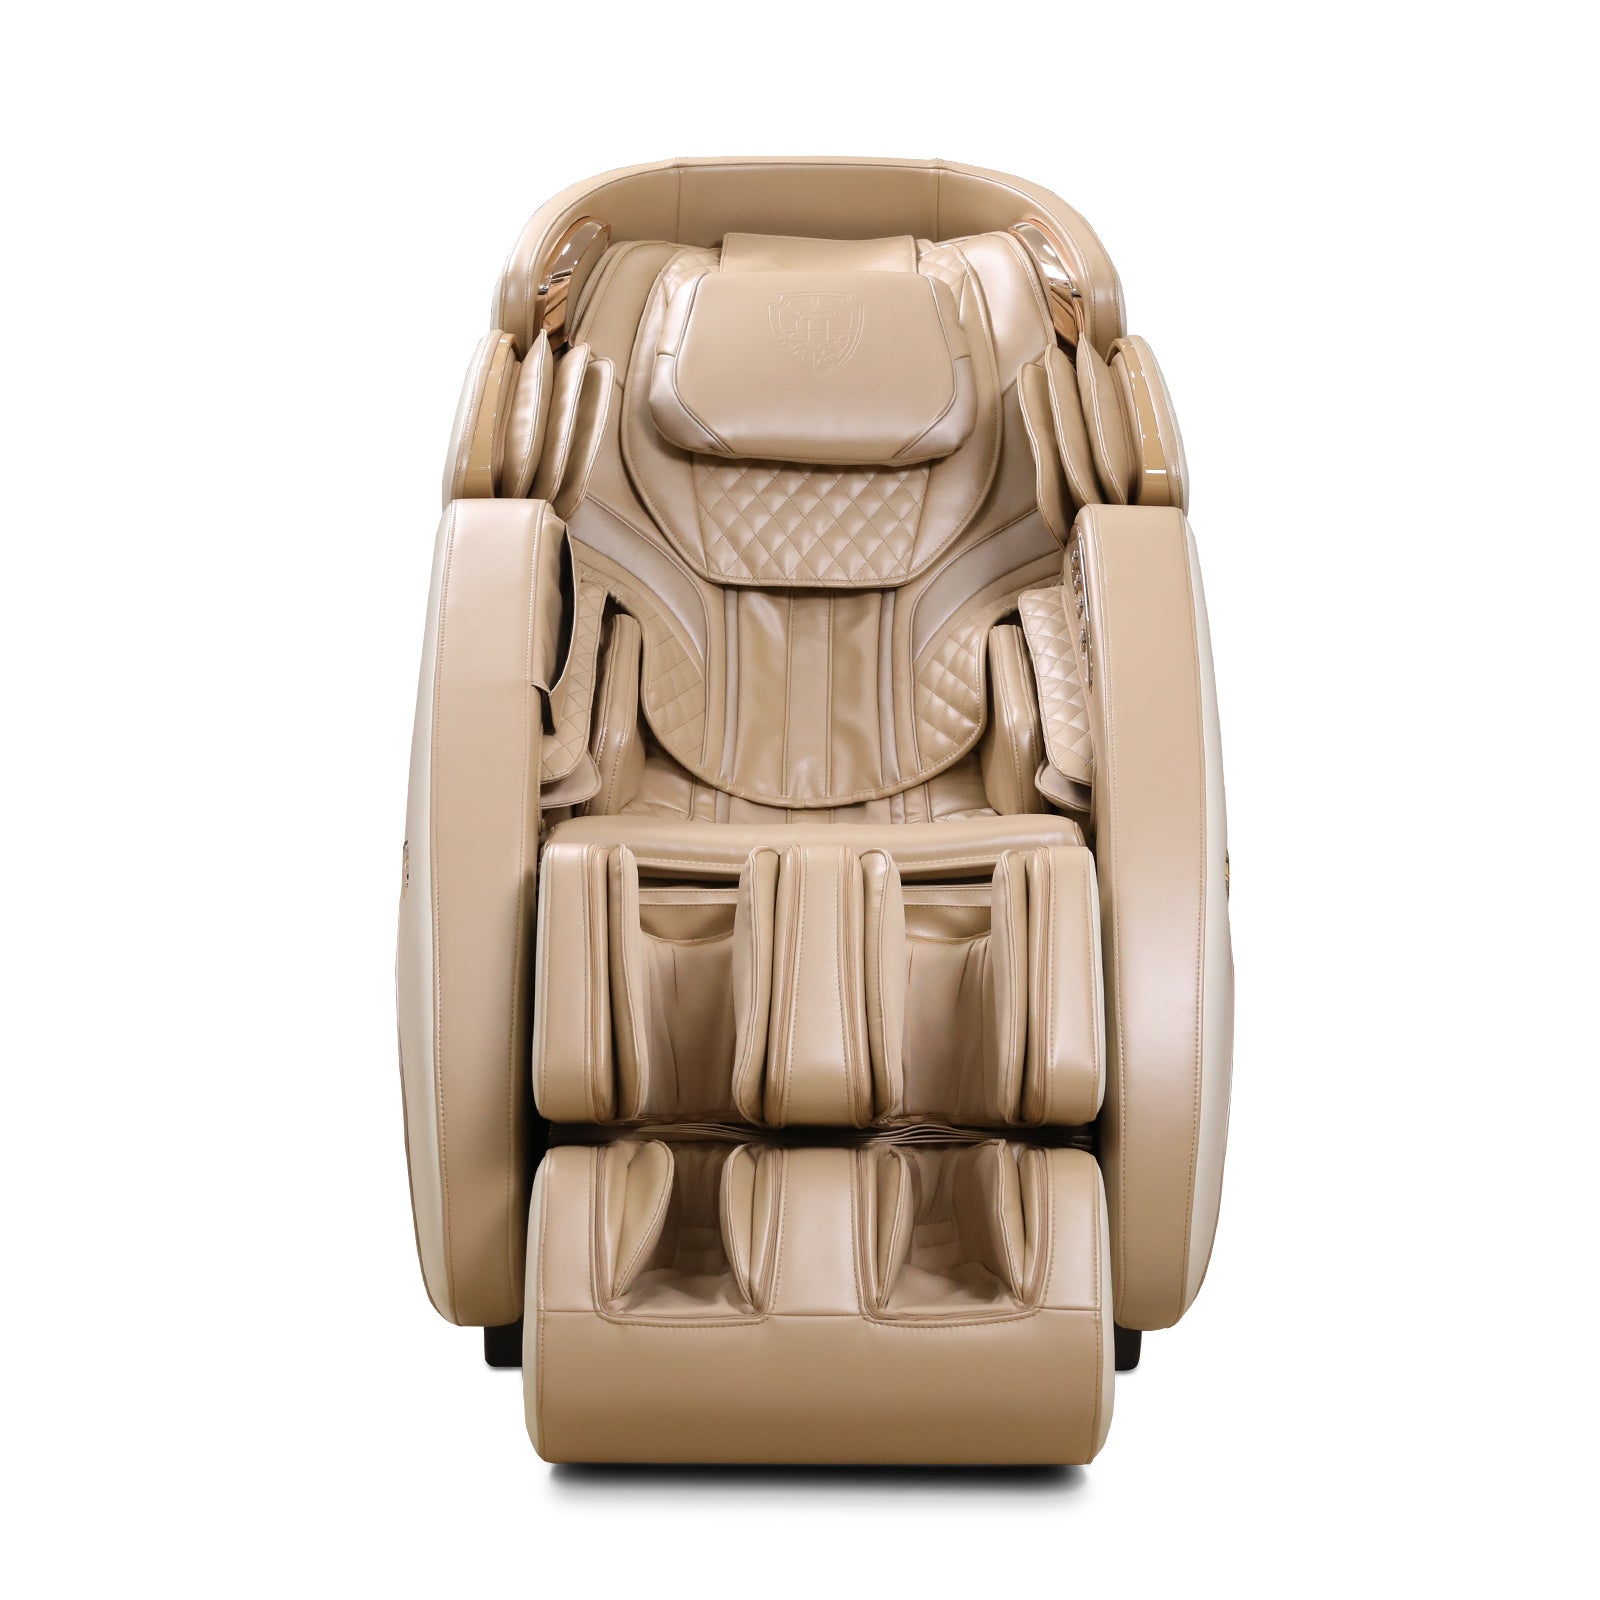 H Solution DIVA Massage Chair (Beige)